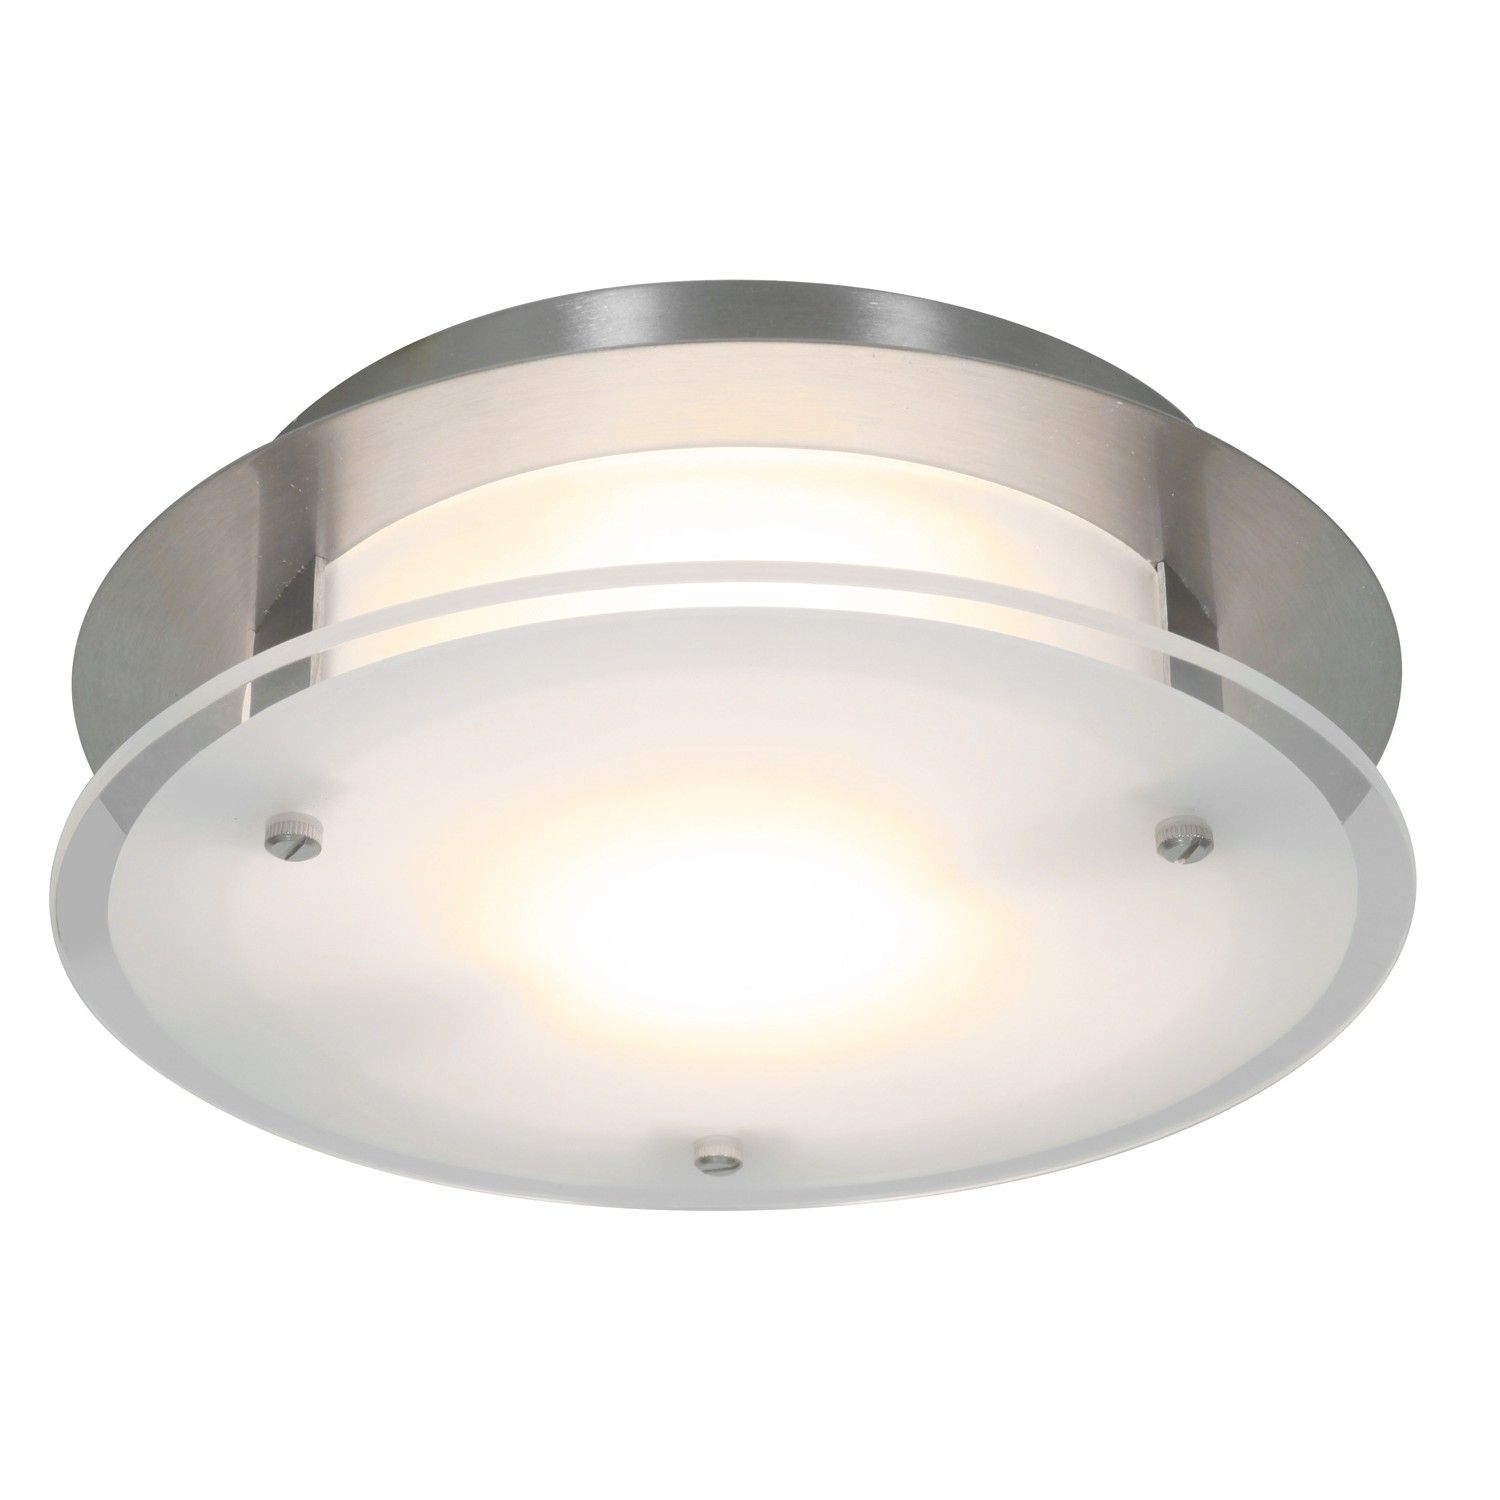 Luxury Ductless Bathroom Fan With Light Bathroom Fan Light regarding sizing 1500 X 1500